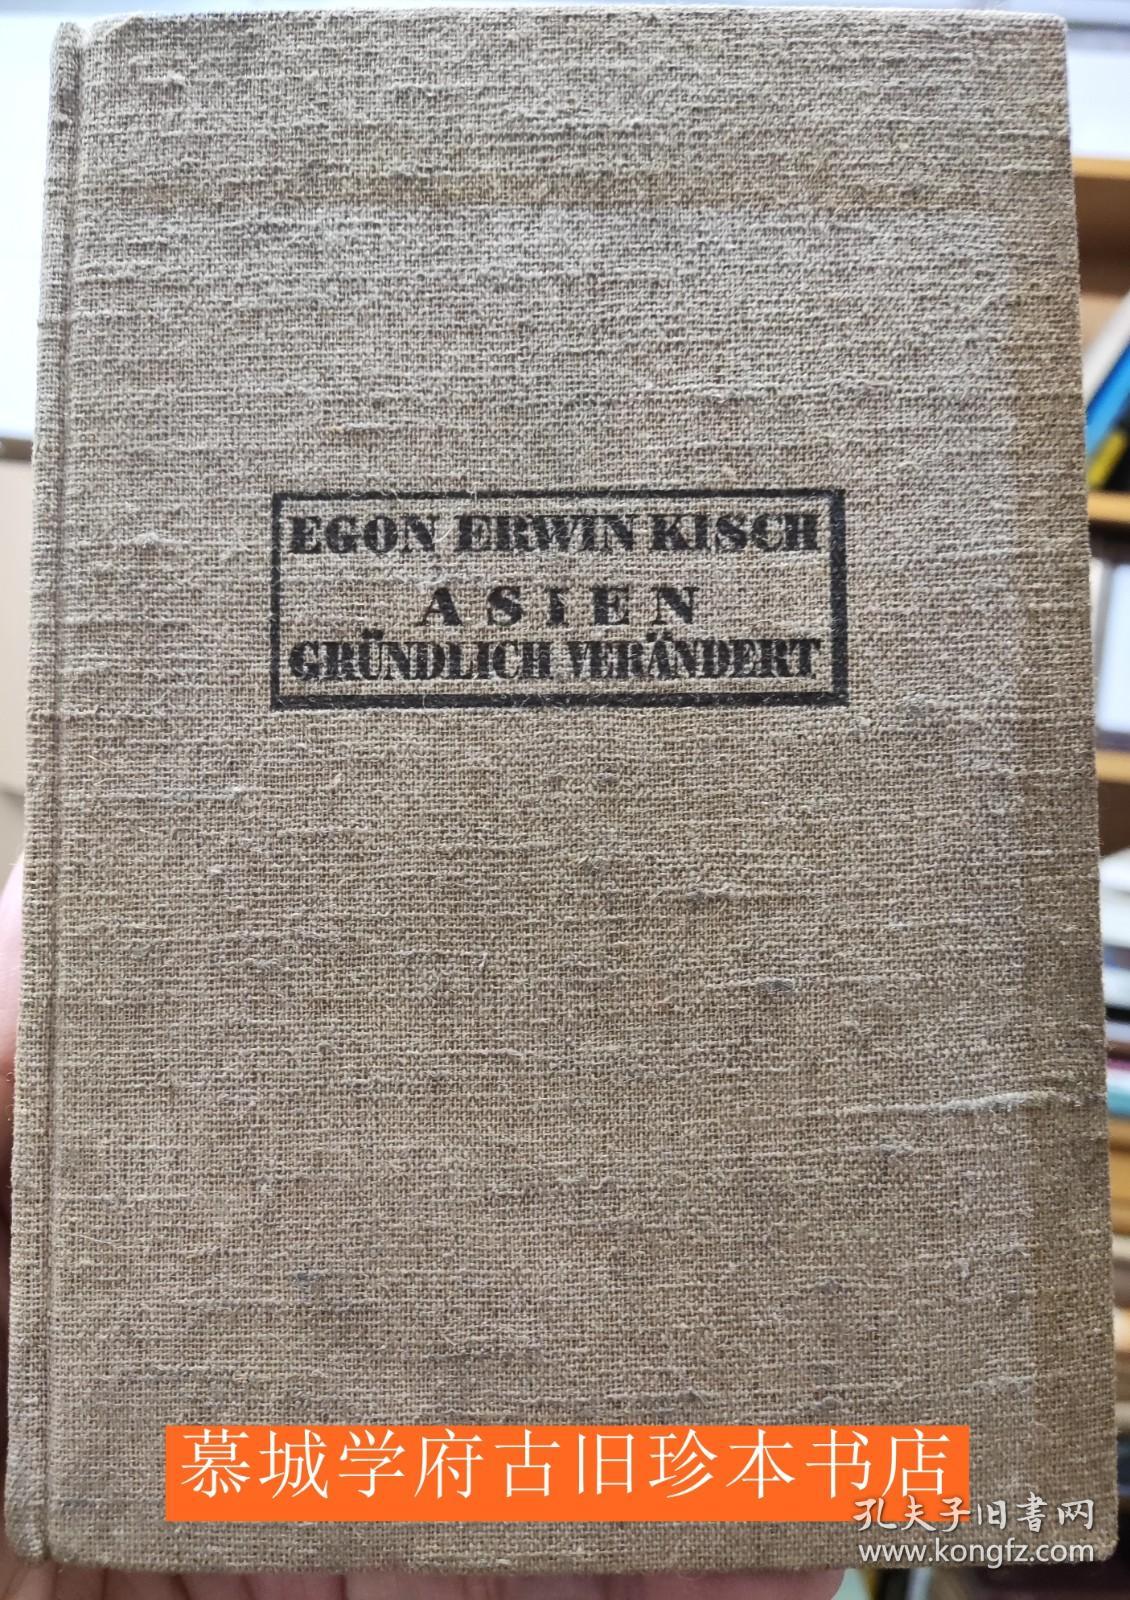 【1932年初版】布面精装/德文原版/基希《亚洲已巨变》 Egon Erwin Kisch: Asien gründlich verändert